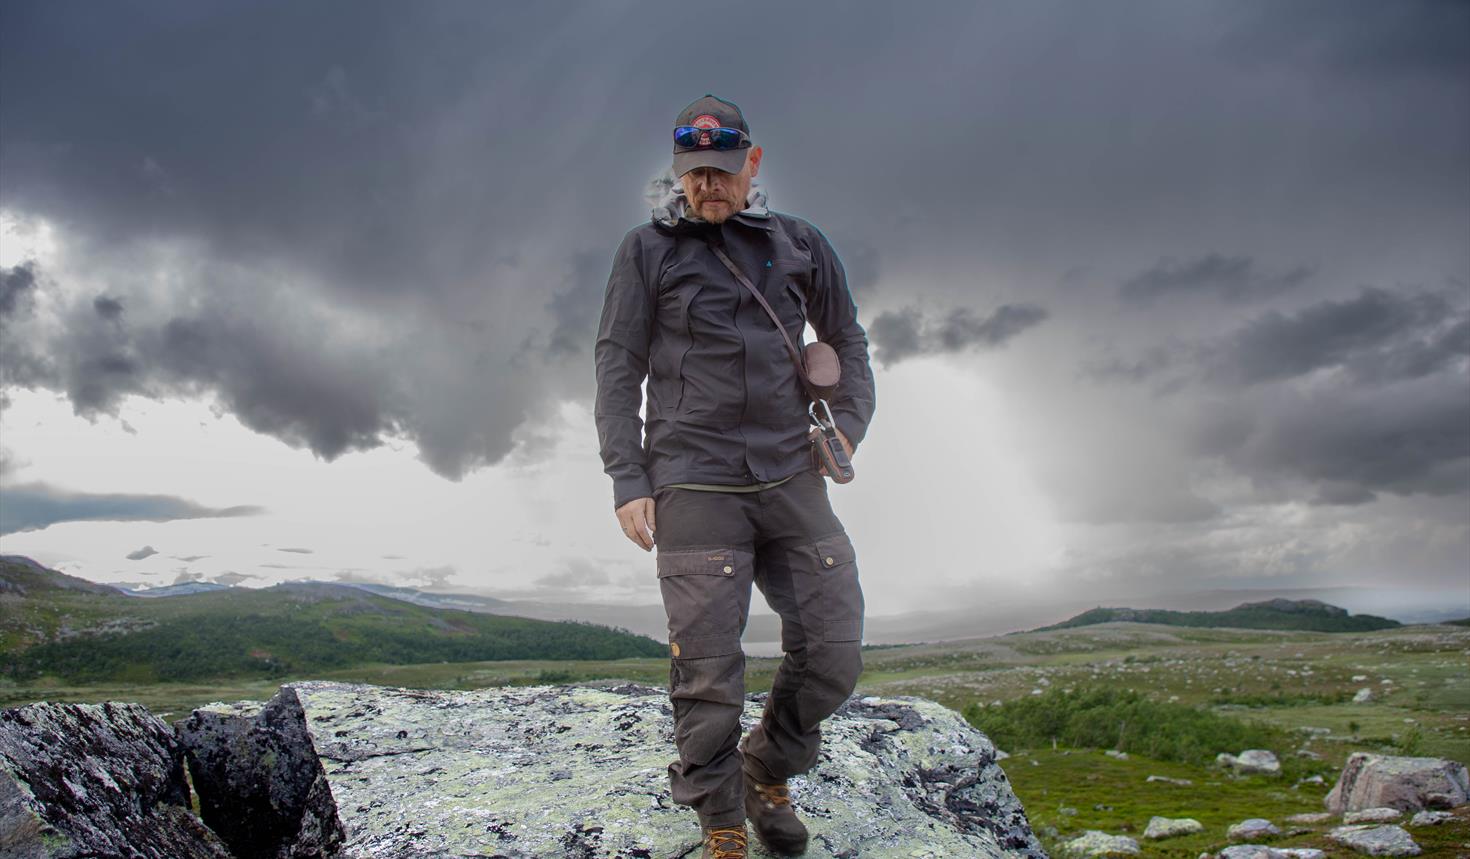 Å gjøre det usynlige synlig - En reise i samisk historie, landskap, verdier og forståelse